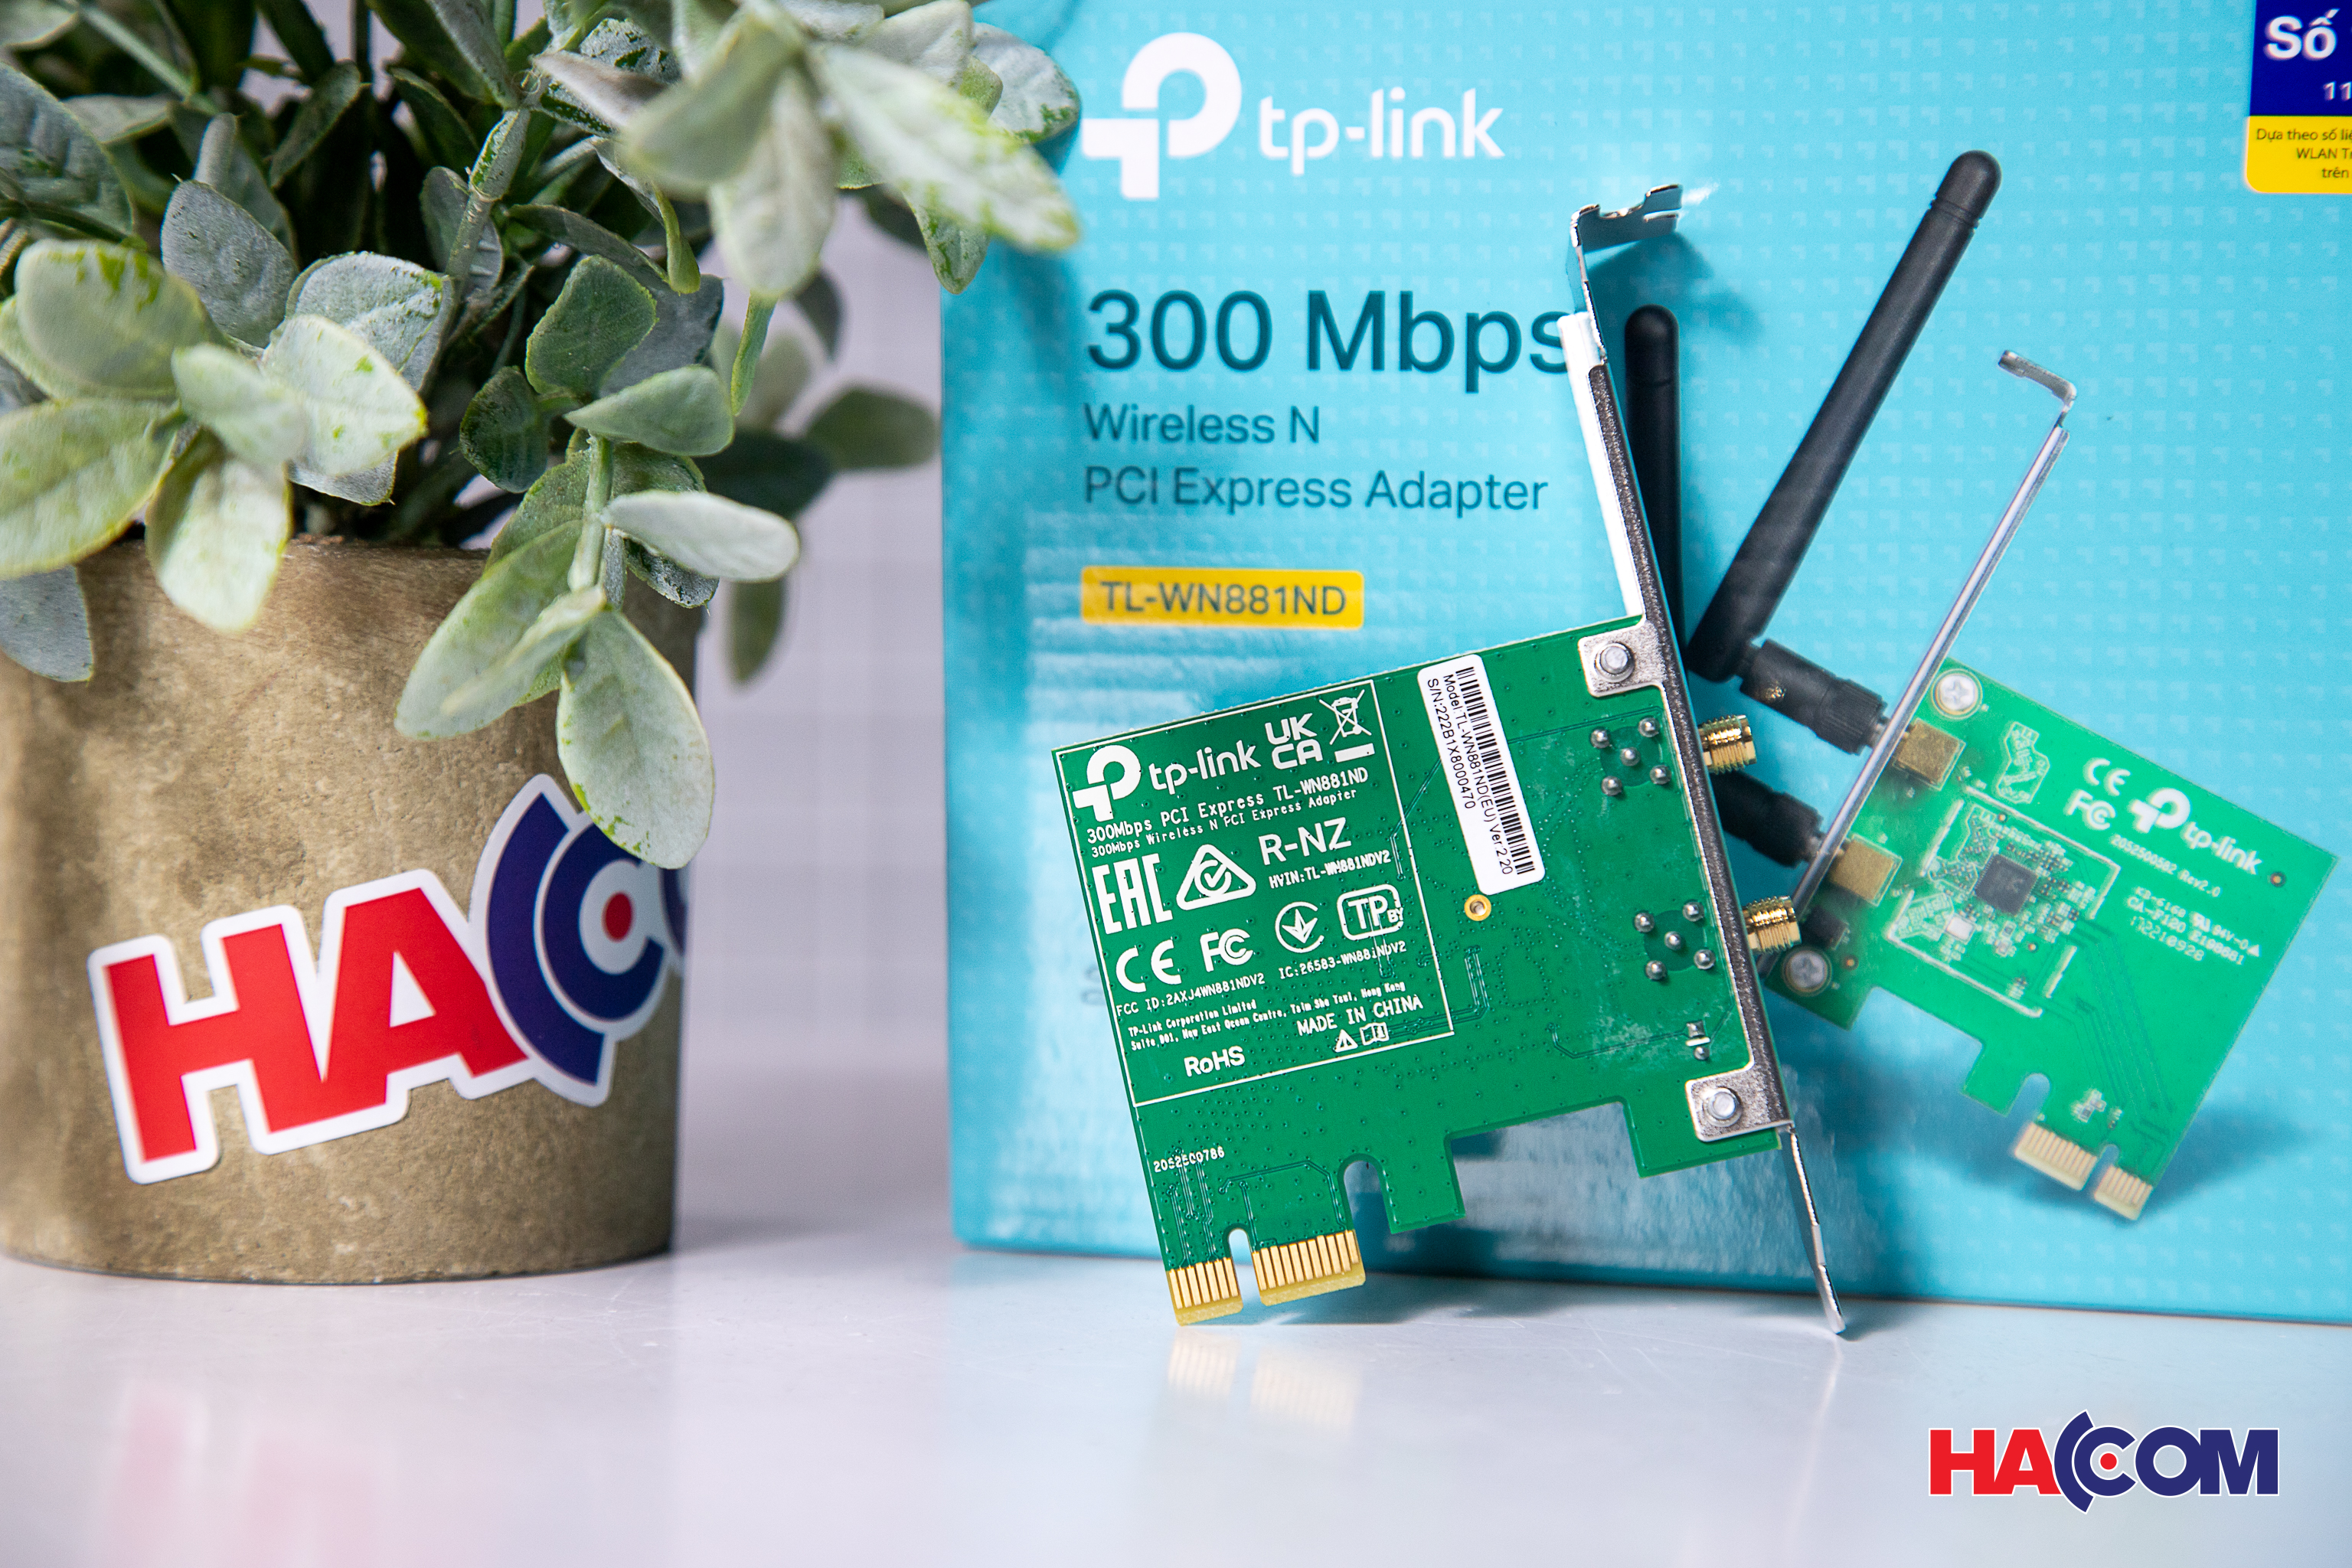 Carte wifi PCI-E 1x TP Link TL-WN881ND - 300 Mbps